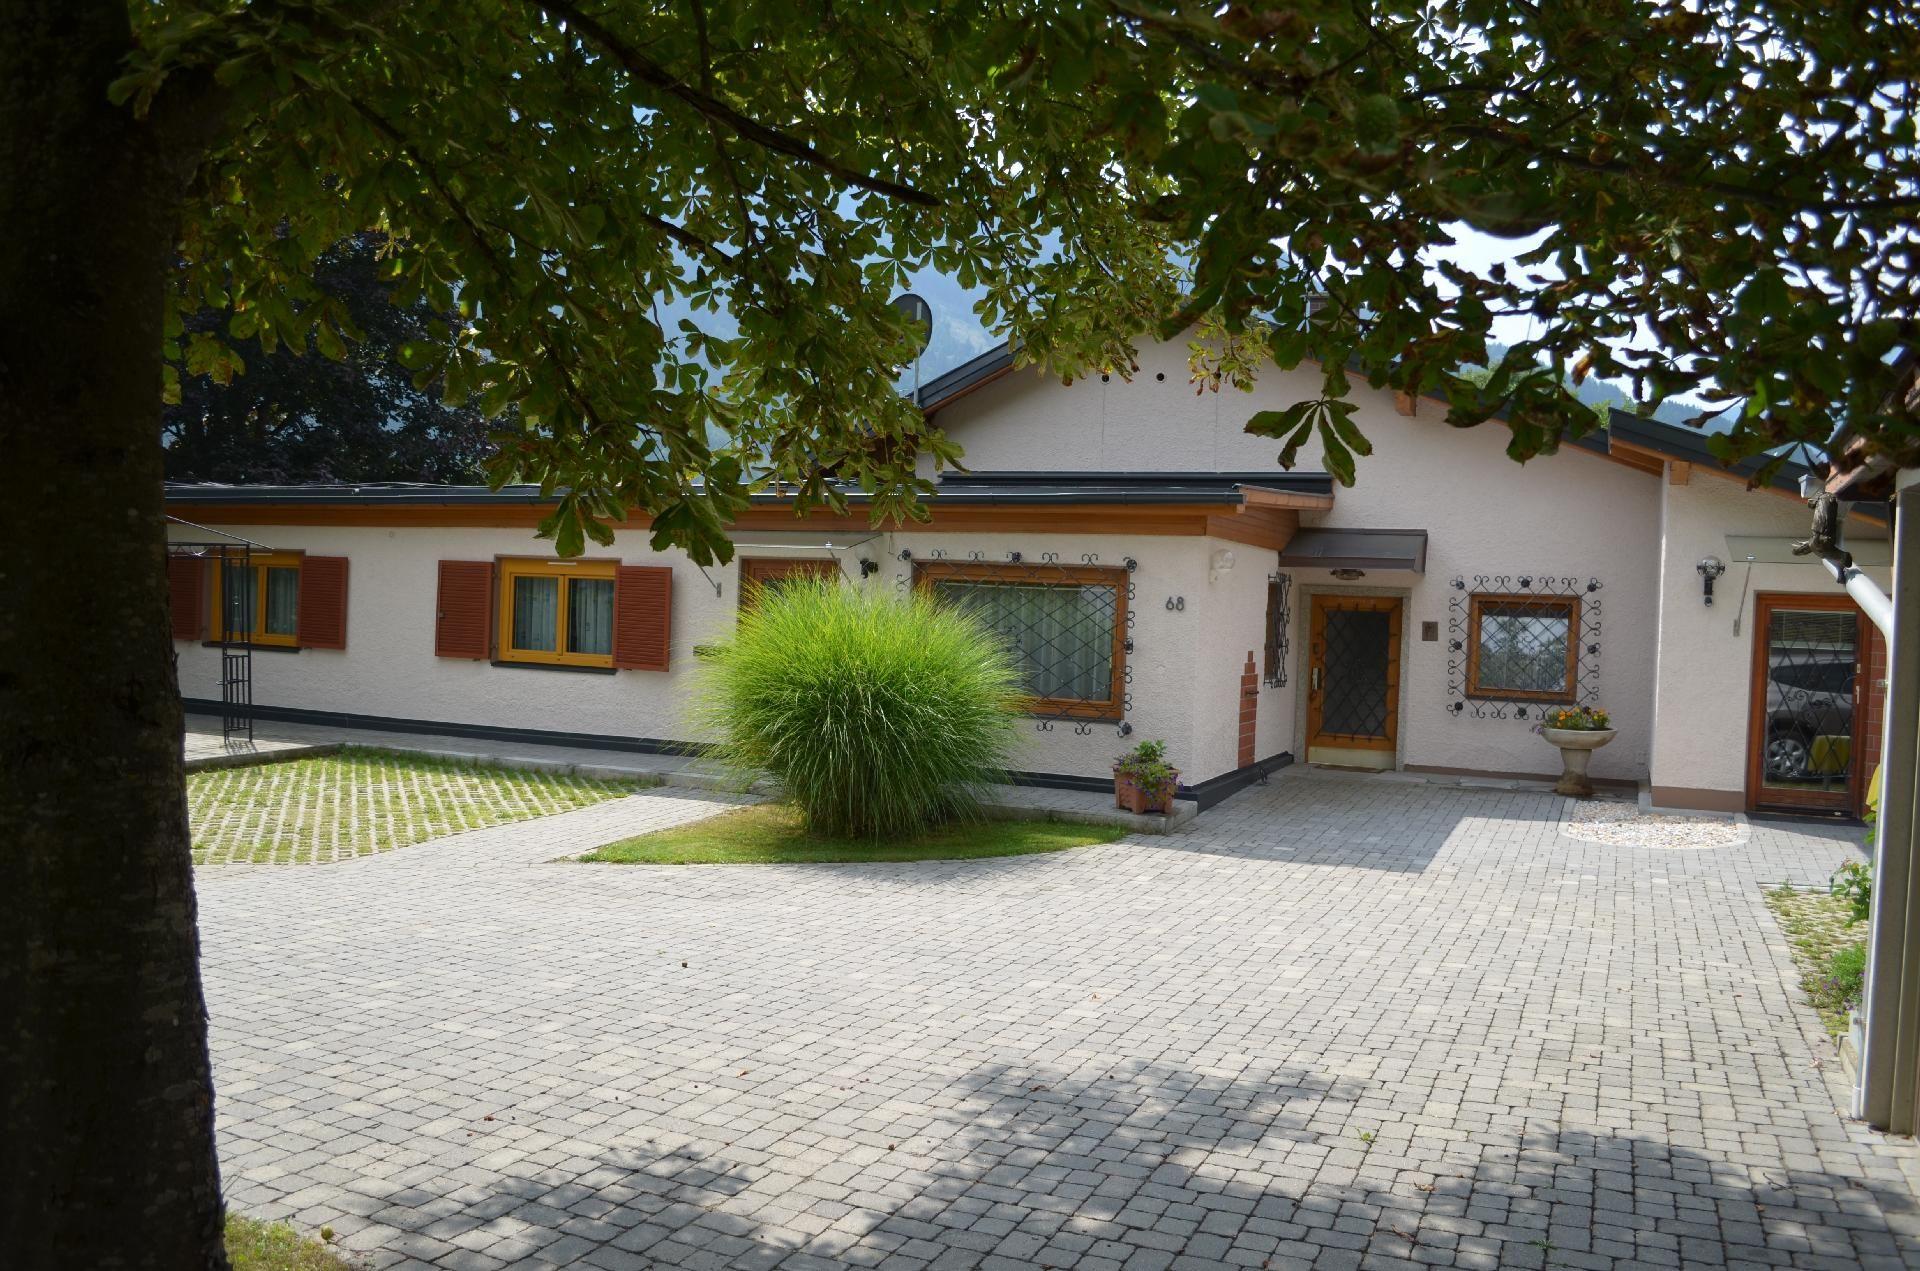 Geräumige Wohnung in Gemeinde Flattach mit Gr Ferienhaus in Österreich